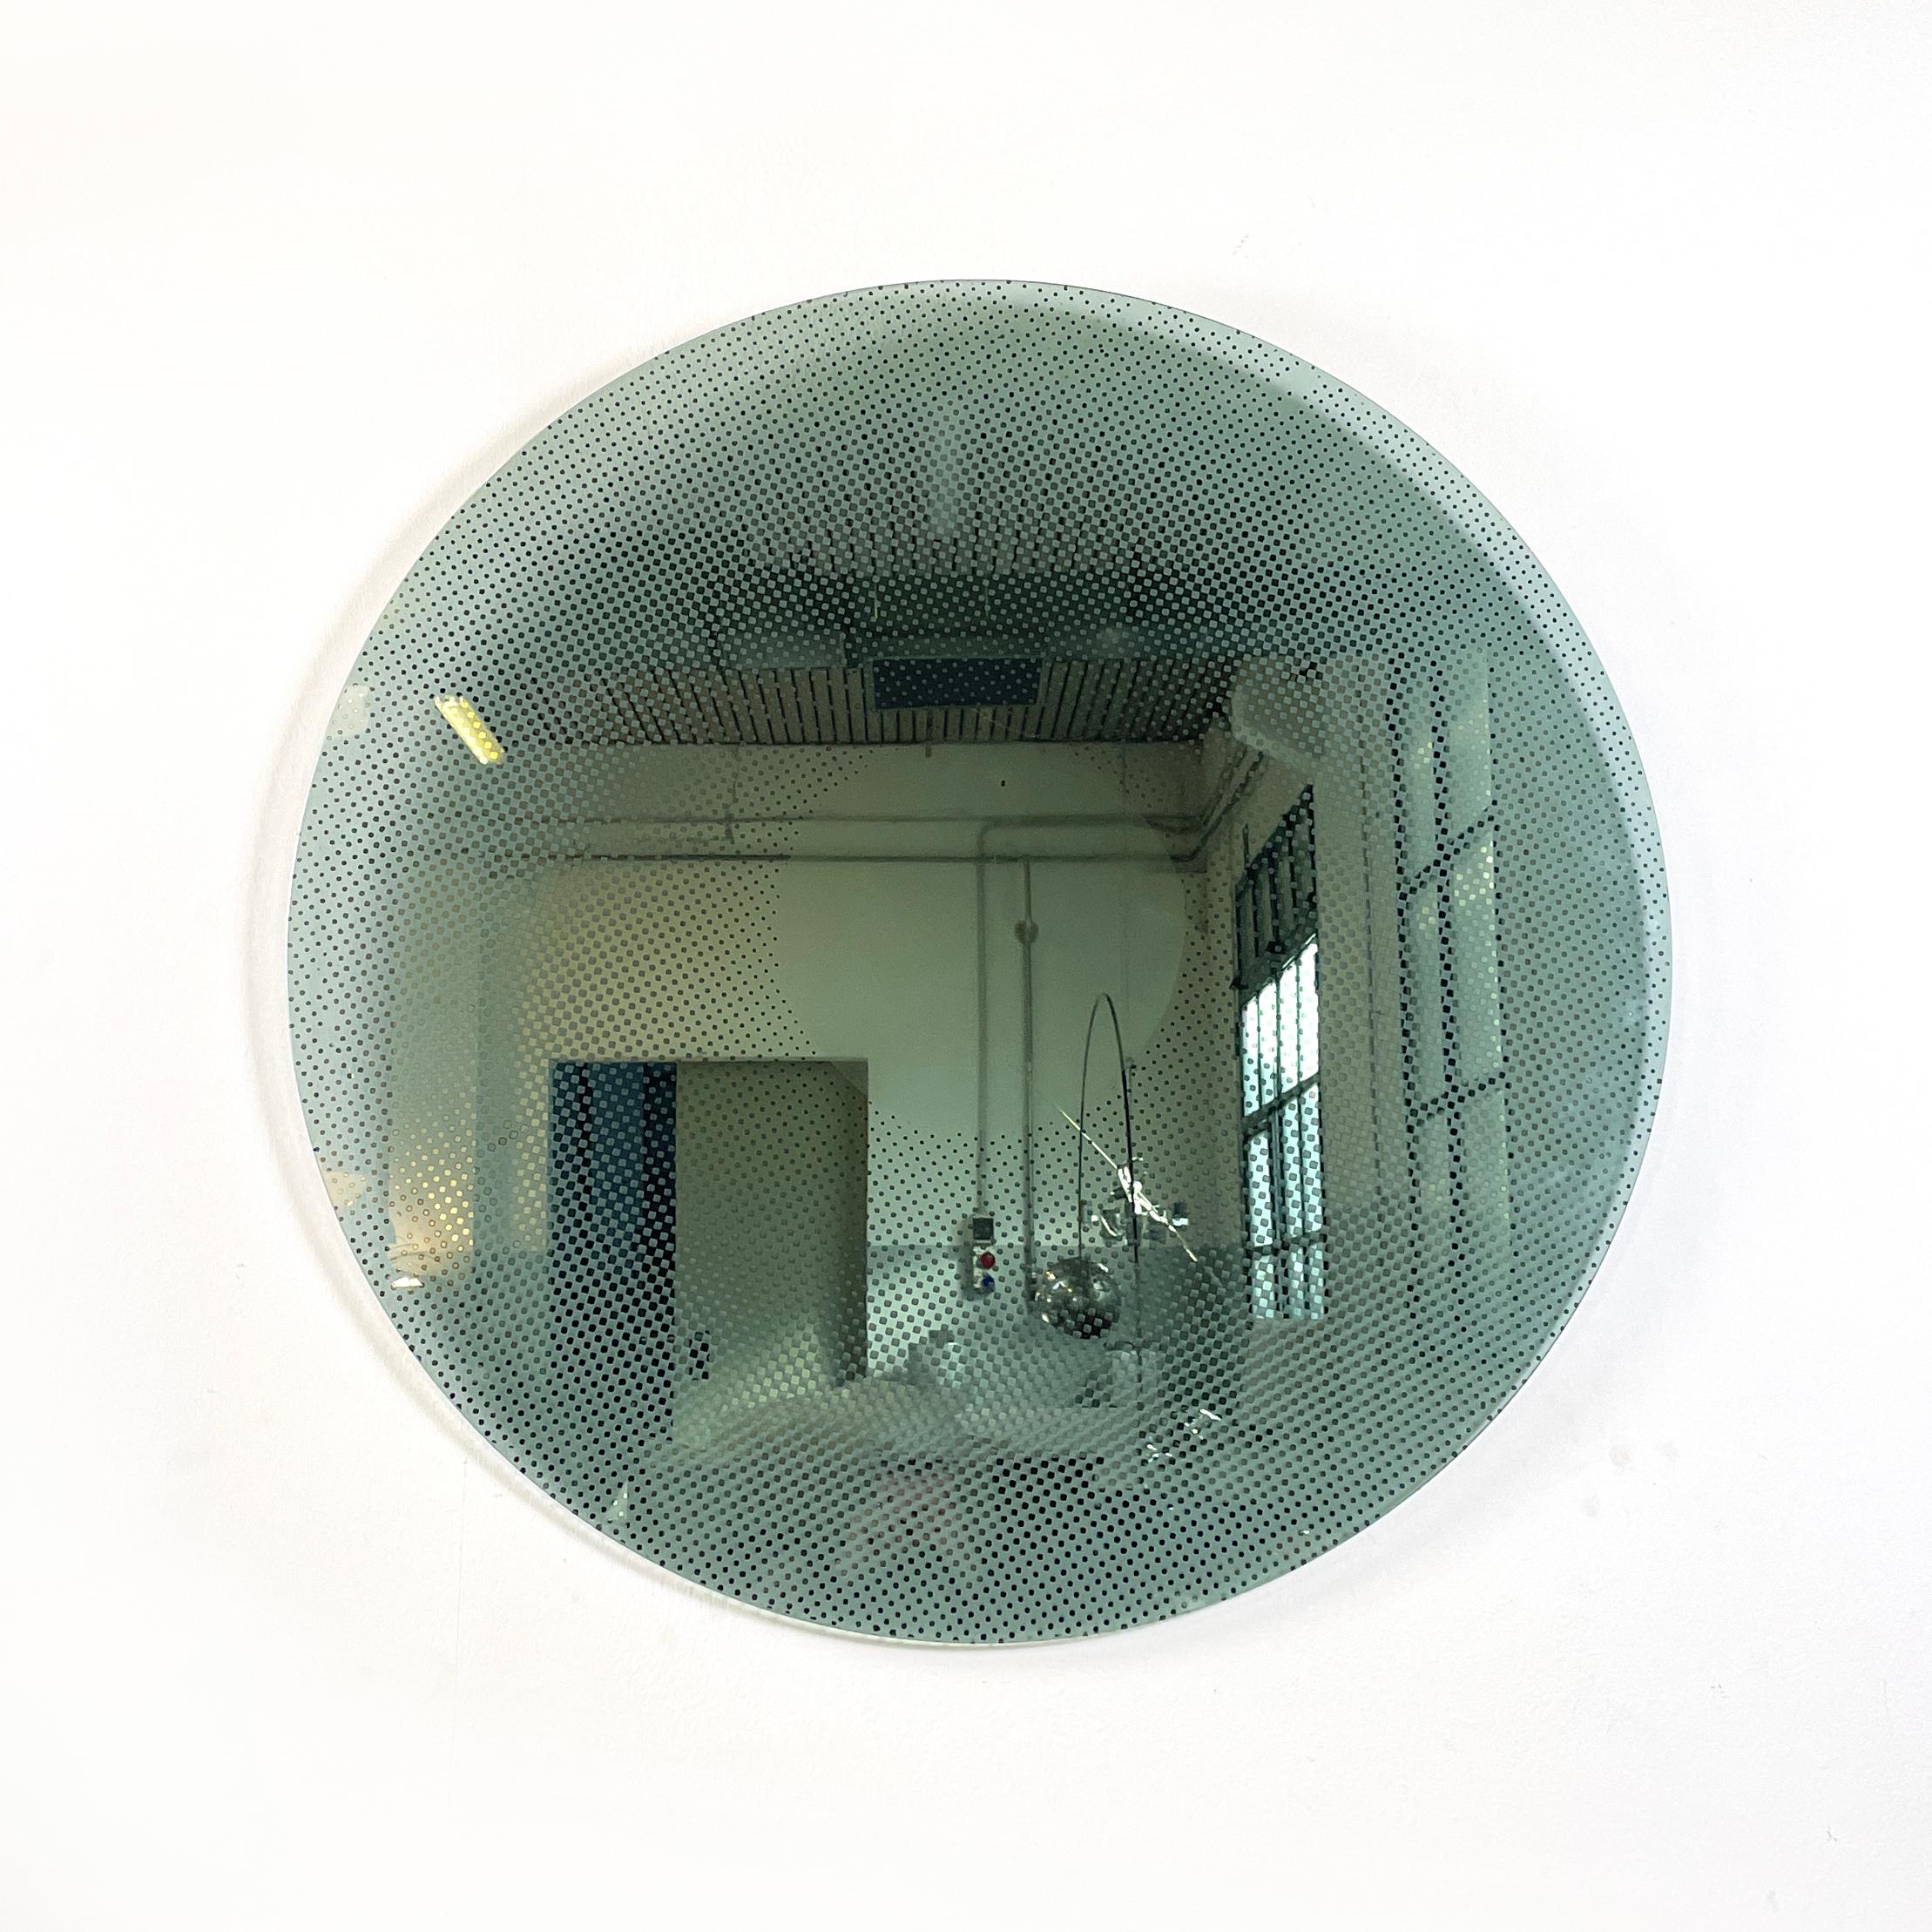 Italienischer moderner großer runder Spiegel aus dickem Glas und Metall, 1990er Jahre
Runder Wandspiegel auf dickem Glas. Von der Mitte aus verblasst der verspiegelte Teil, wodurch ein Schachbrettmuster zwischen Spiegel und Glas entsteht. Auf der